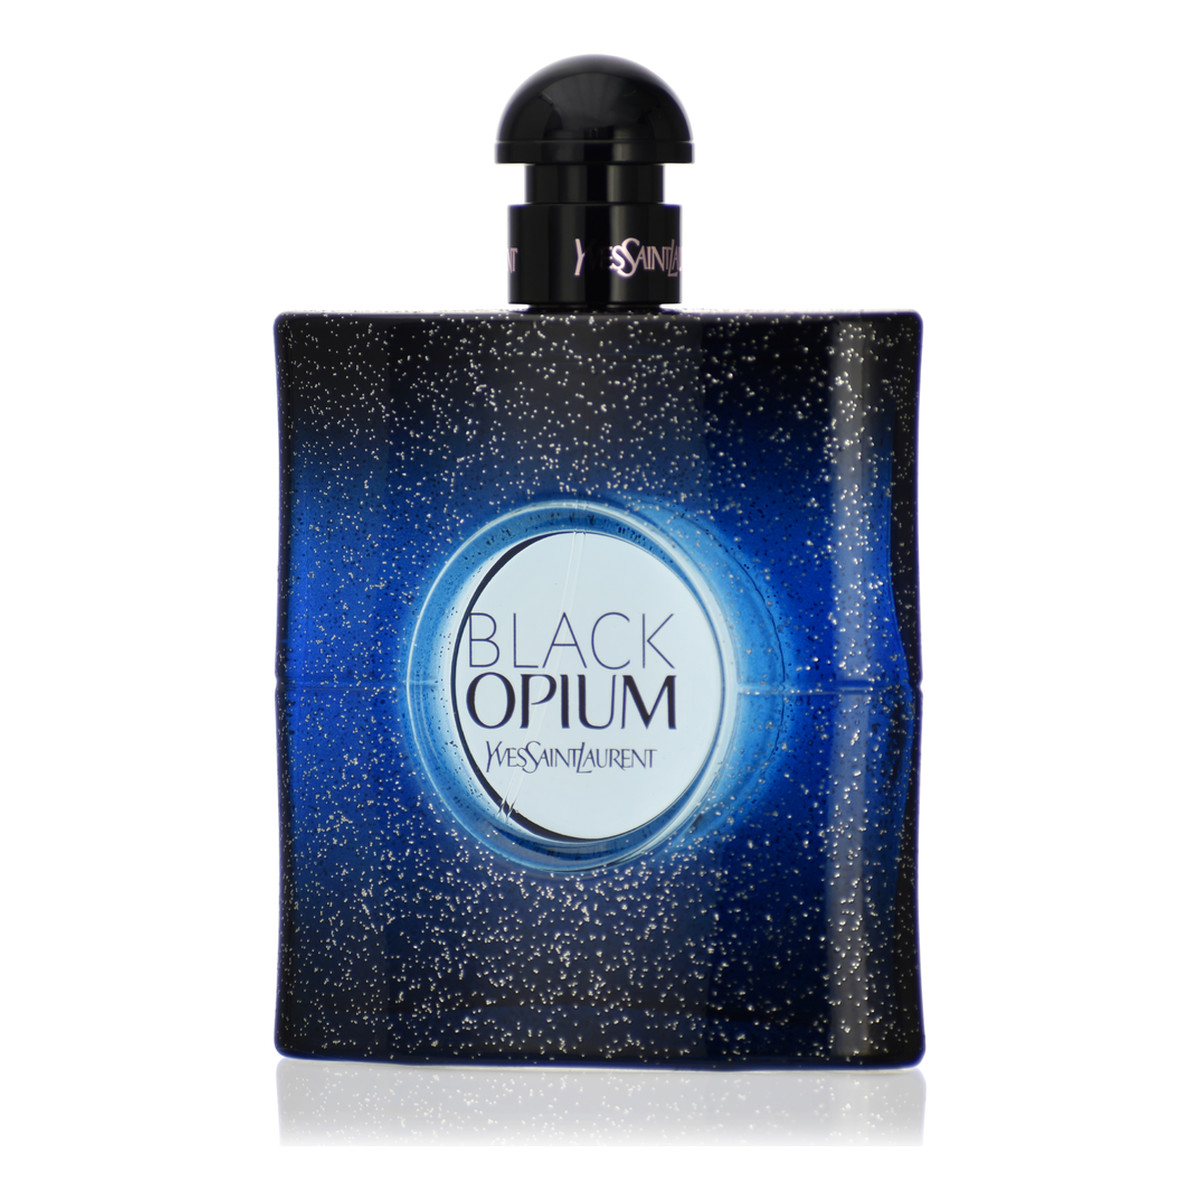 Yves Saint Laurent Black Opium Intense Woda Perfumowana 50ml